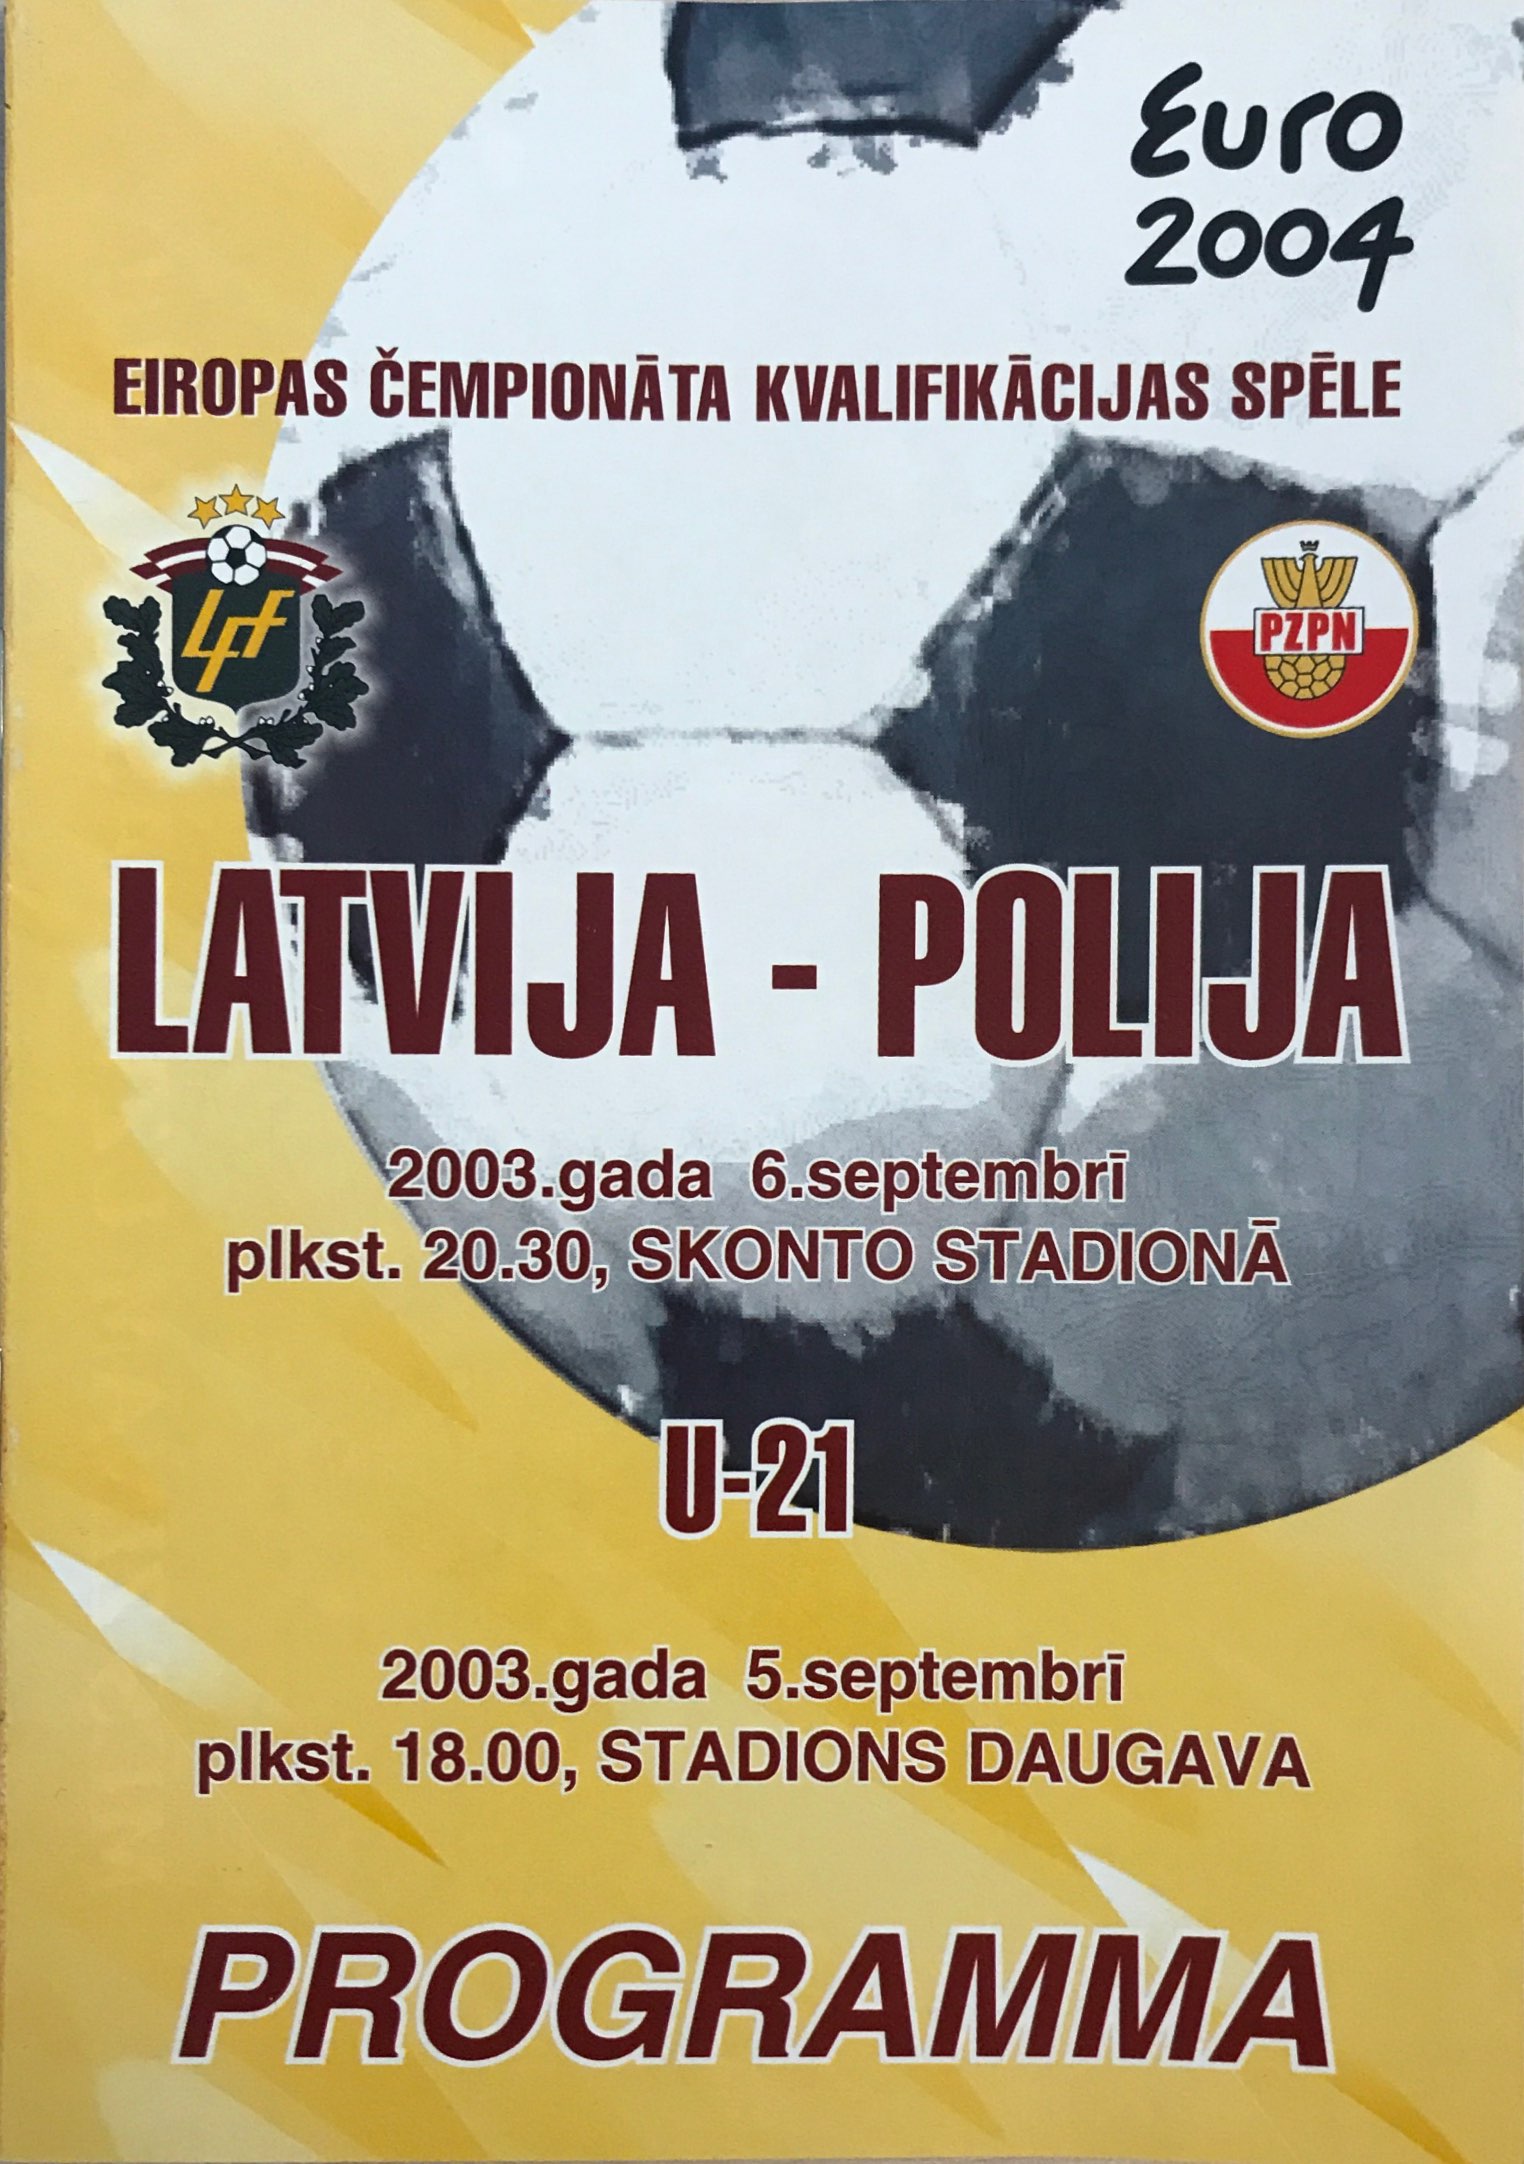 Program meczowy Łotwa - Polska 0-2 (06.09.2003) i Łotwa - Polska 0-2 U21 (05.09.2003).